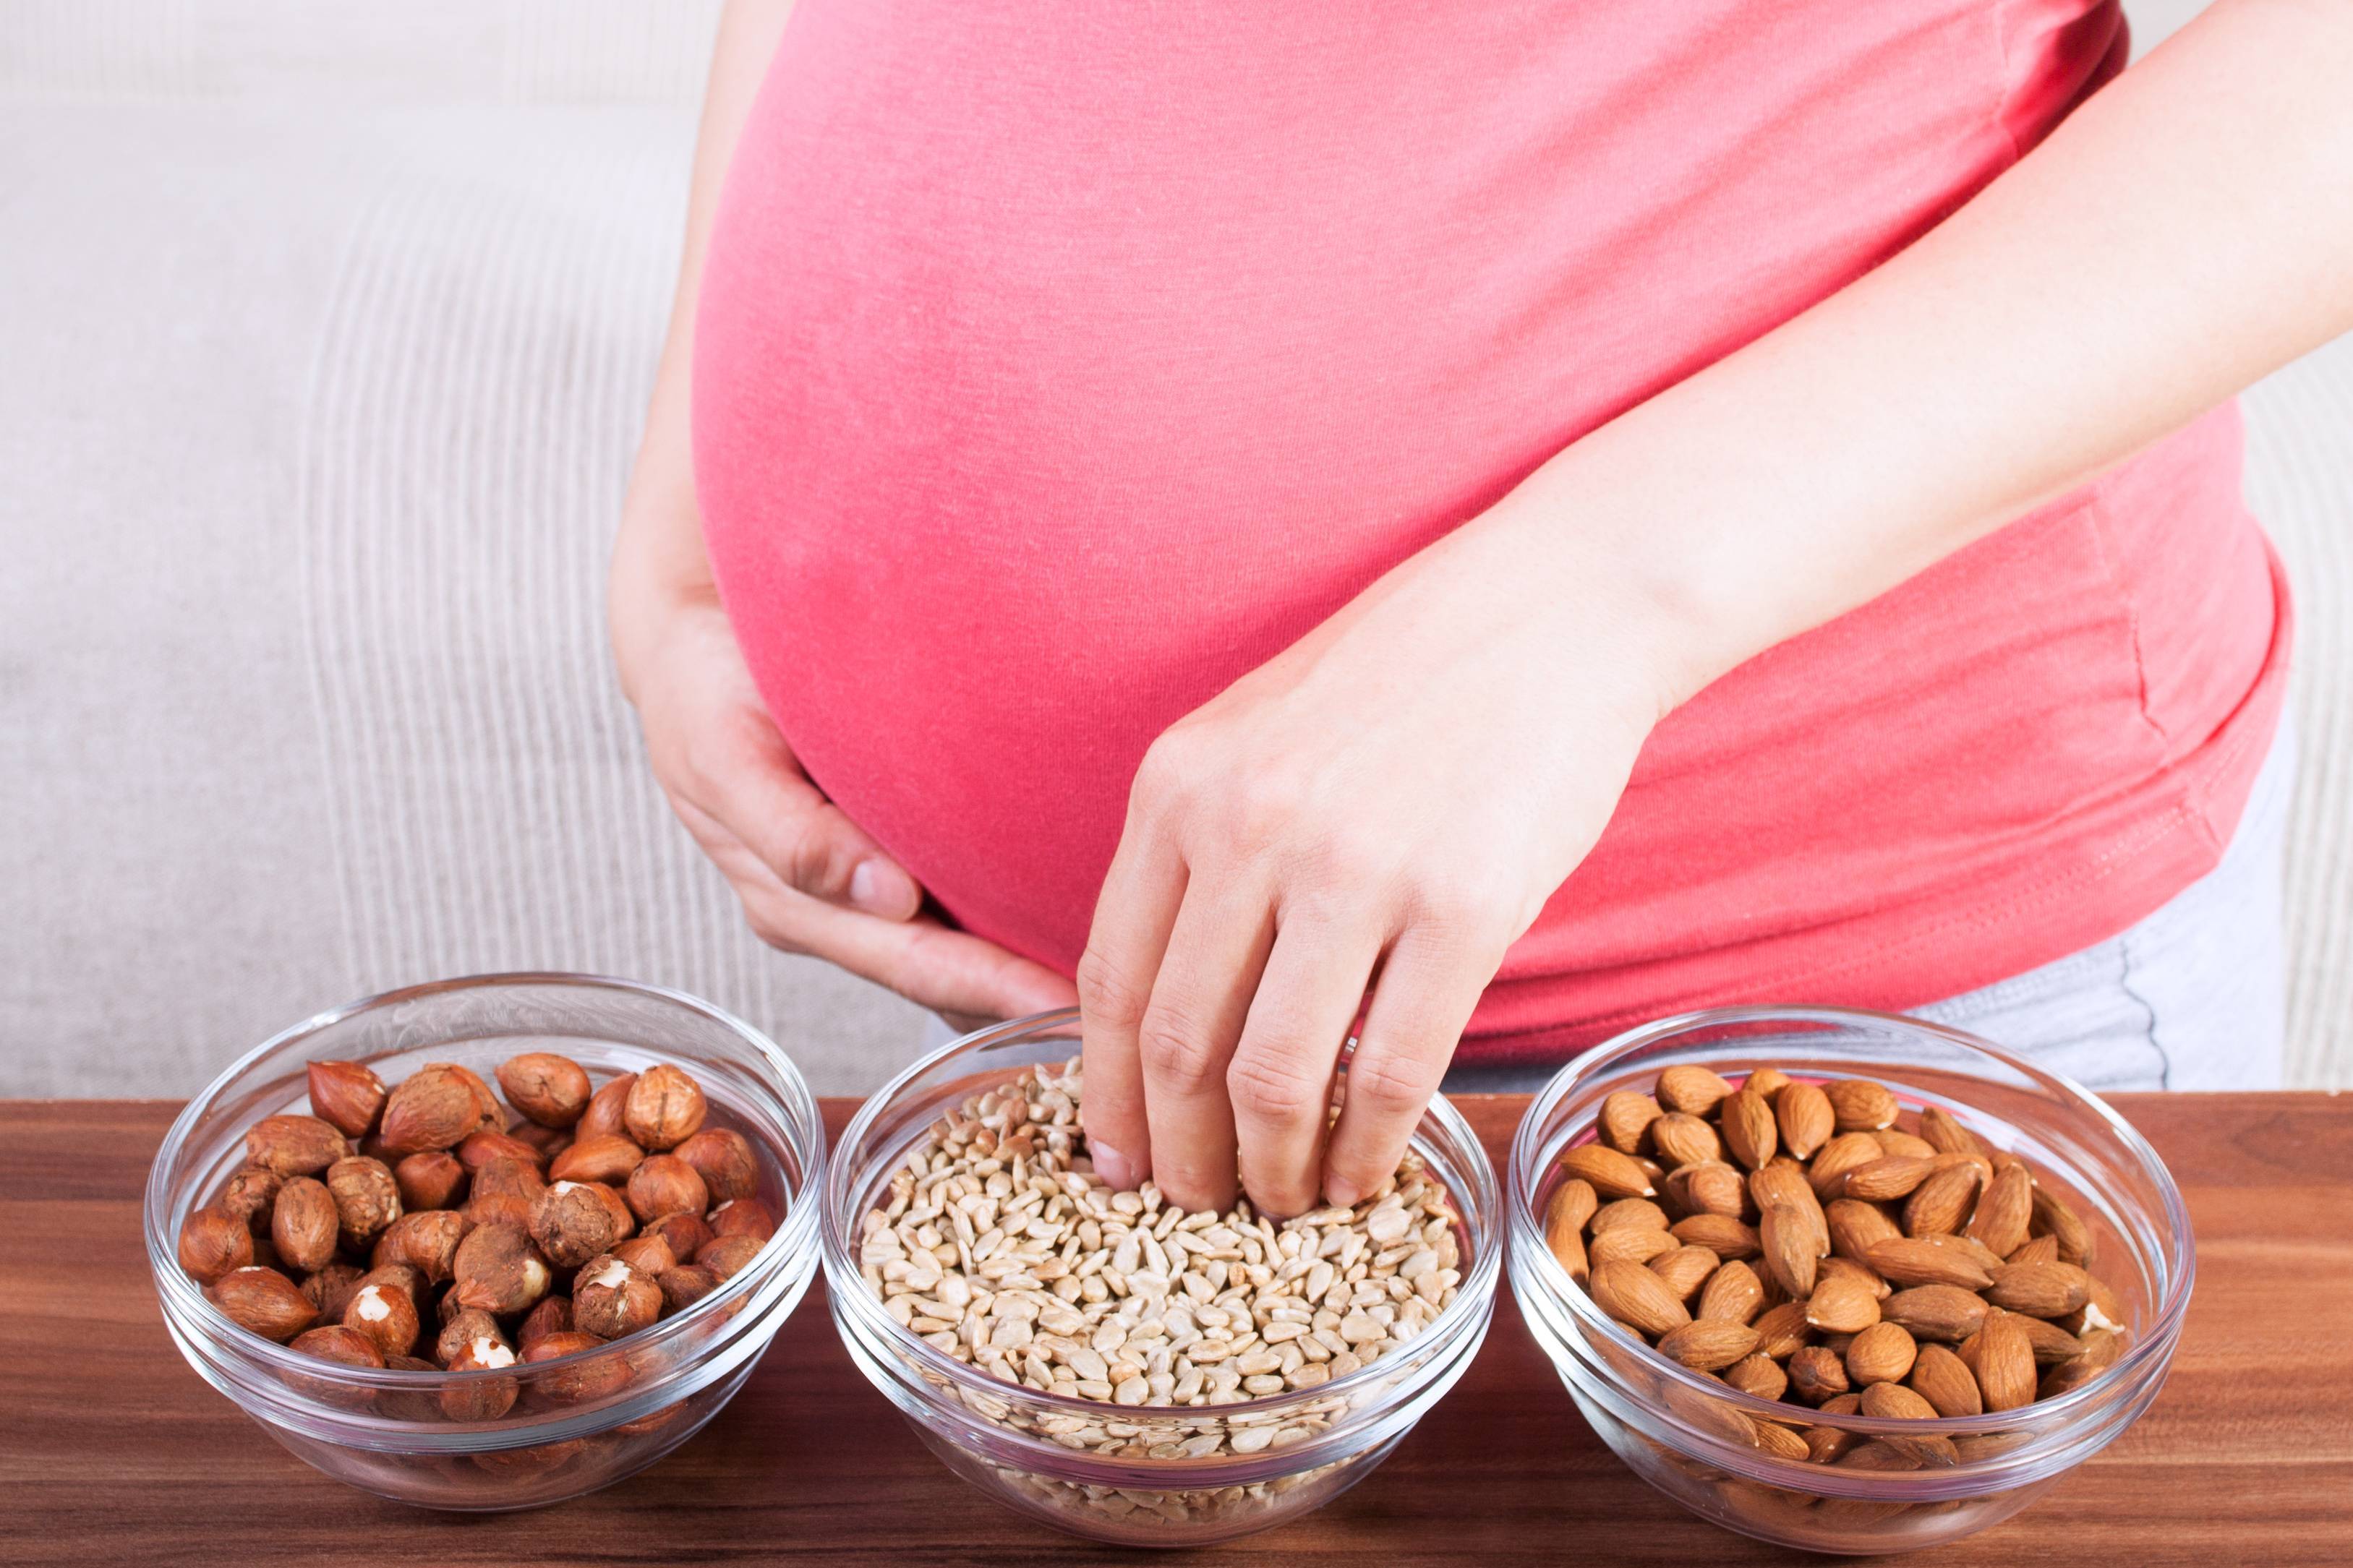 Польза и вред кешью при беременности. Выбор орехов, суточная норма и меры предосторожности